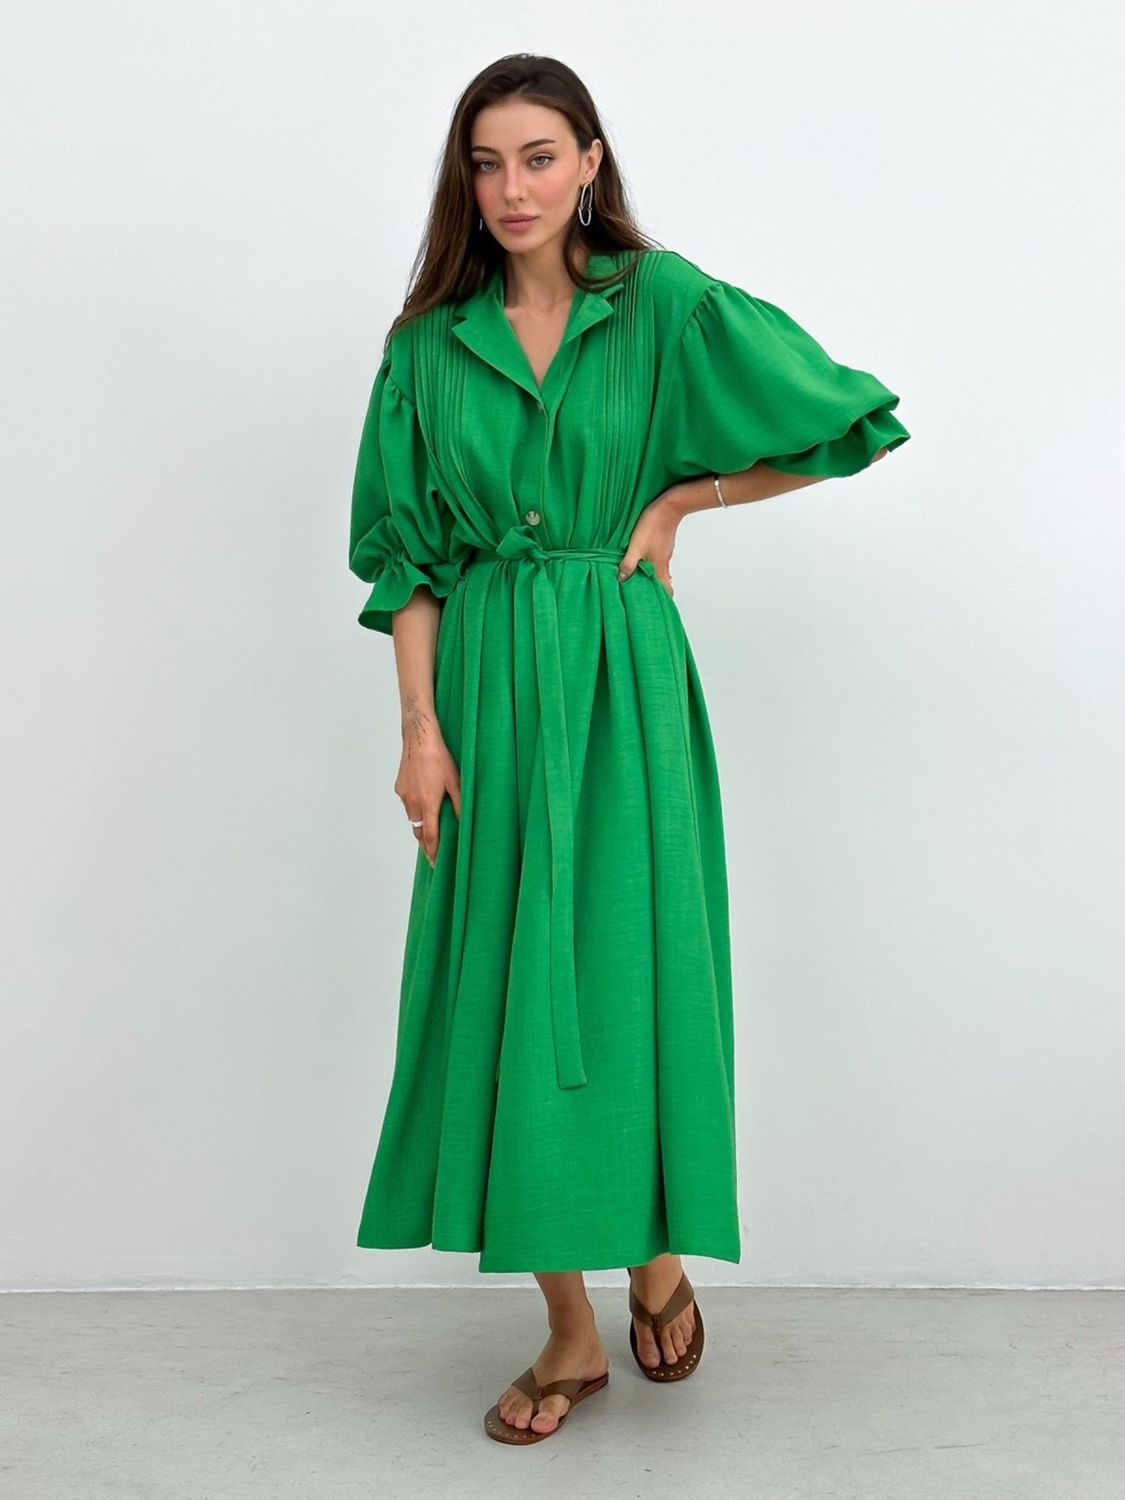 Летнее льняное платье рубашка зеленого цвета - фото